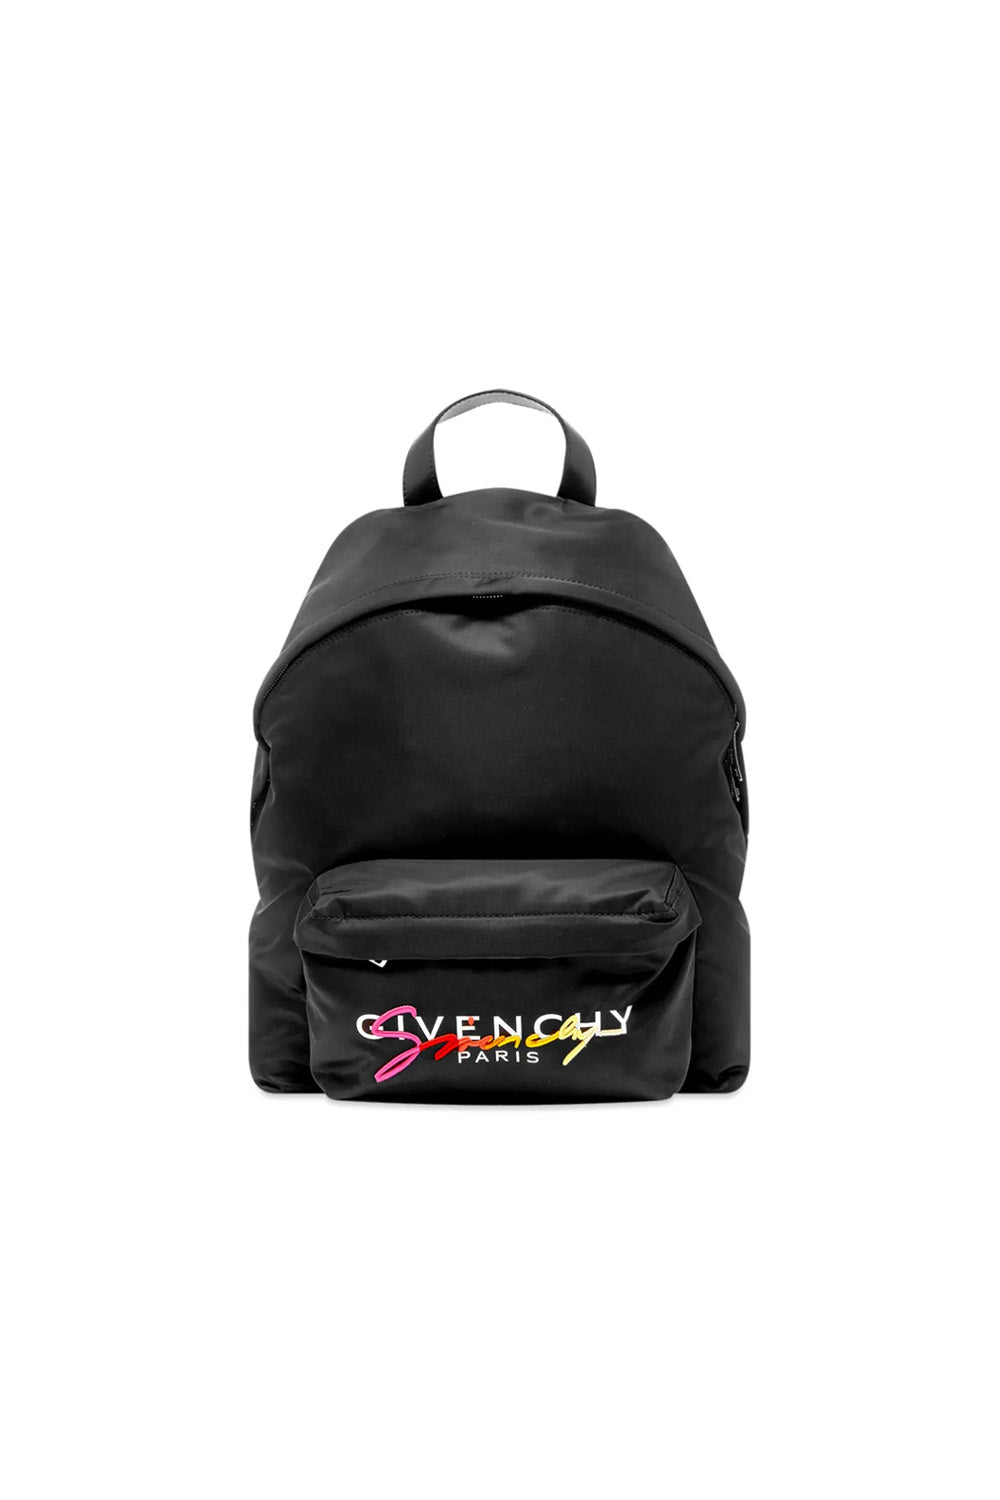 Givenchy Urban Sunset signature-logo backpack